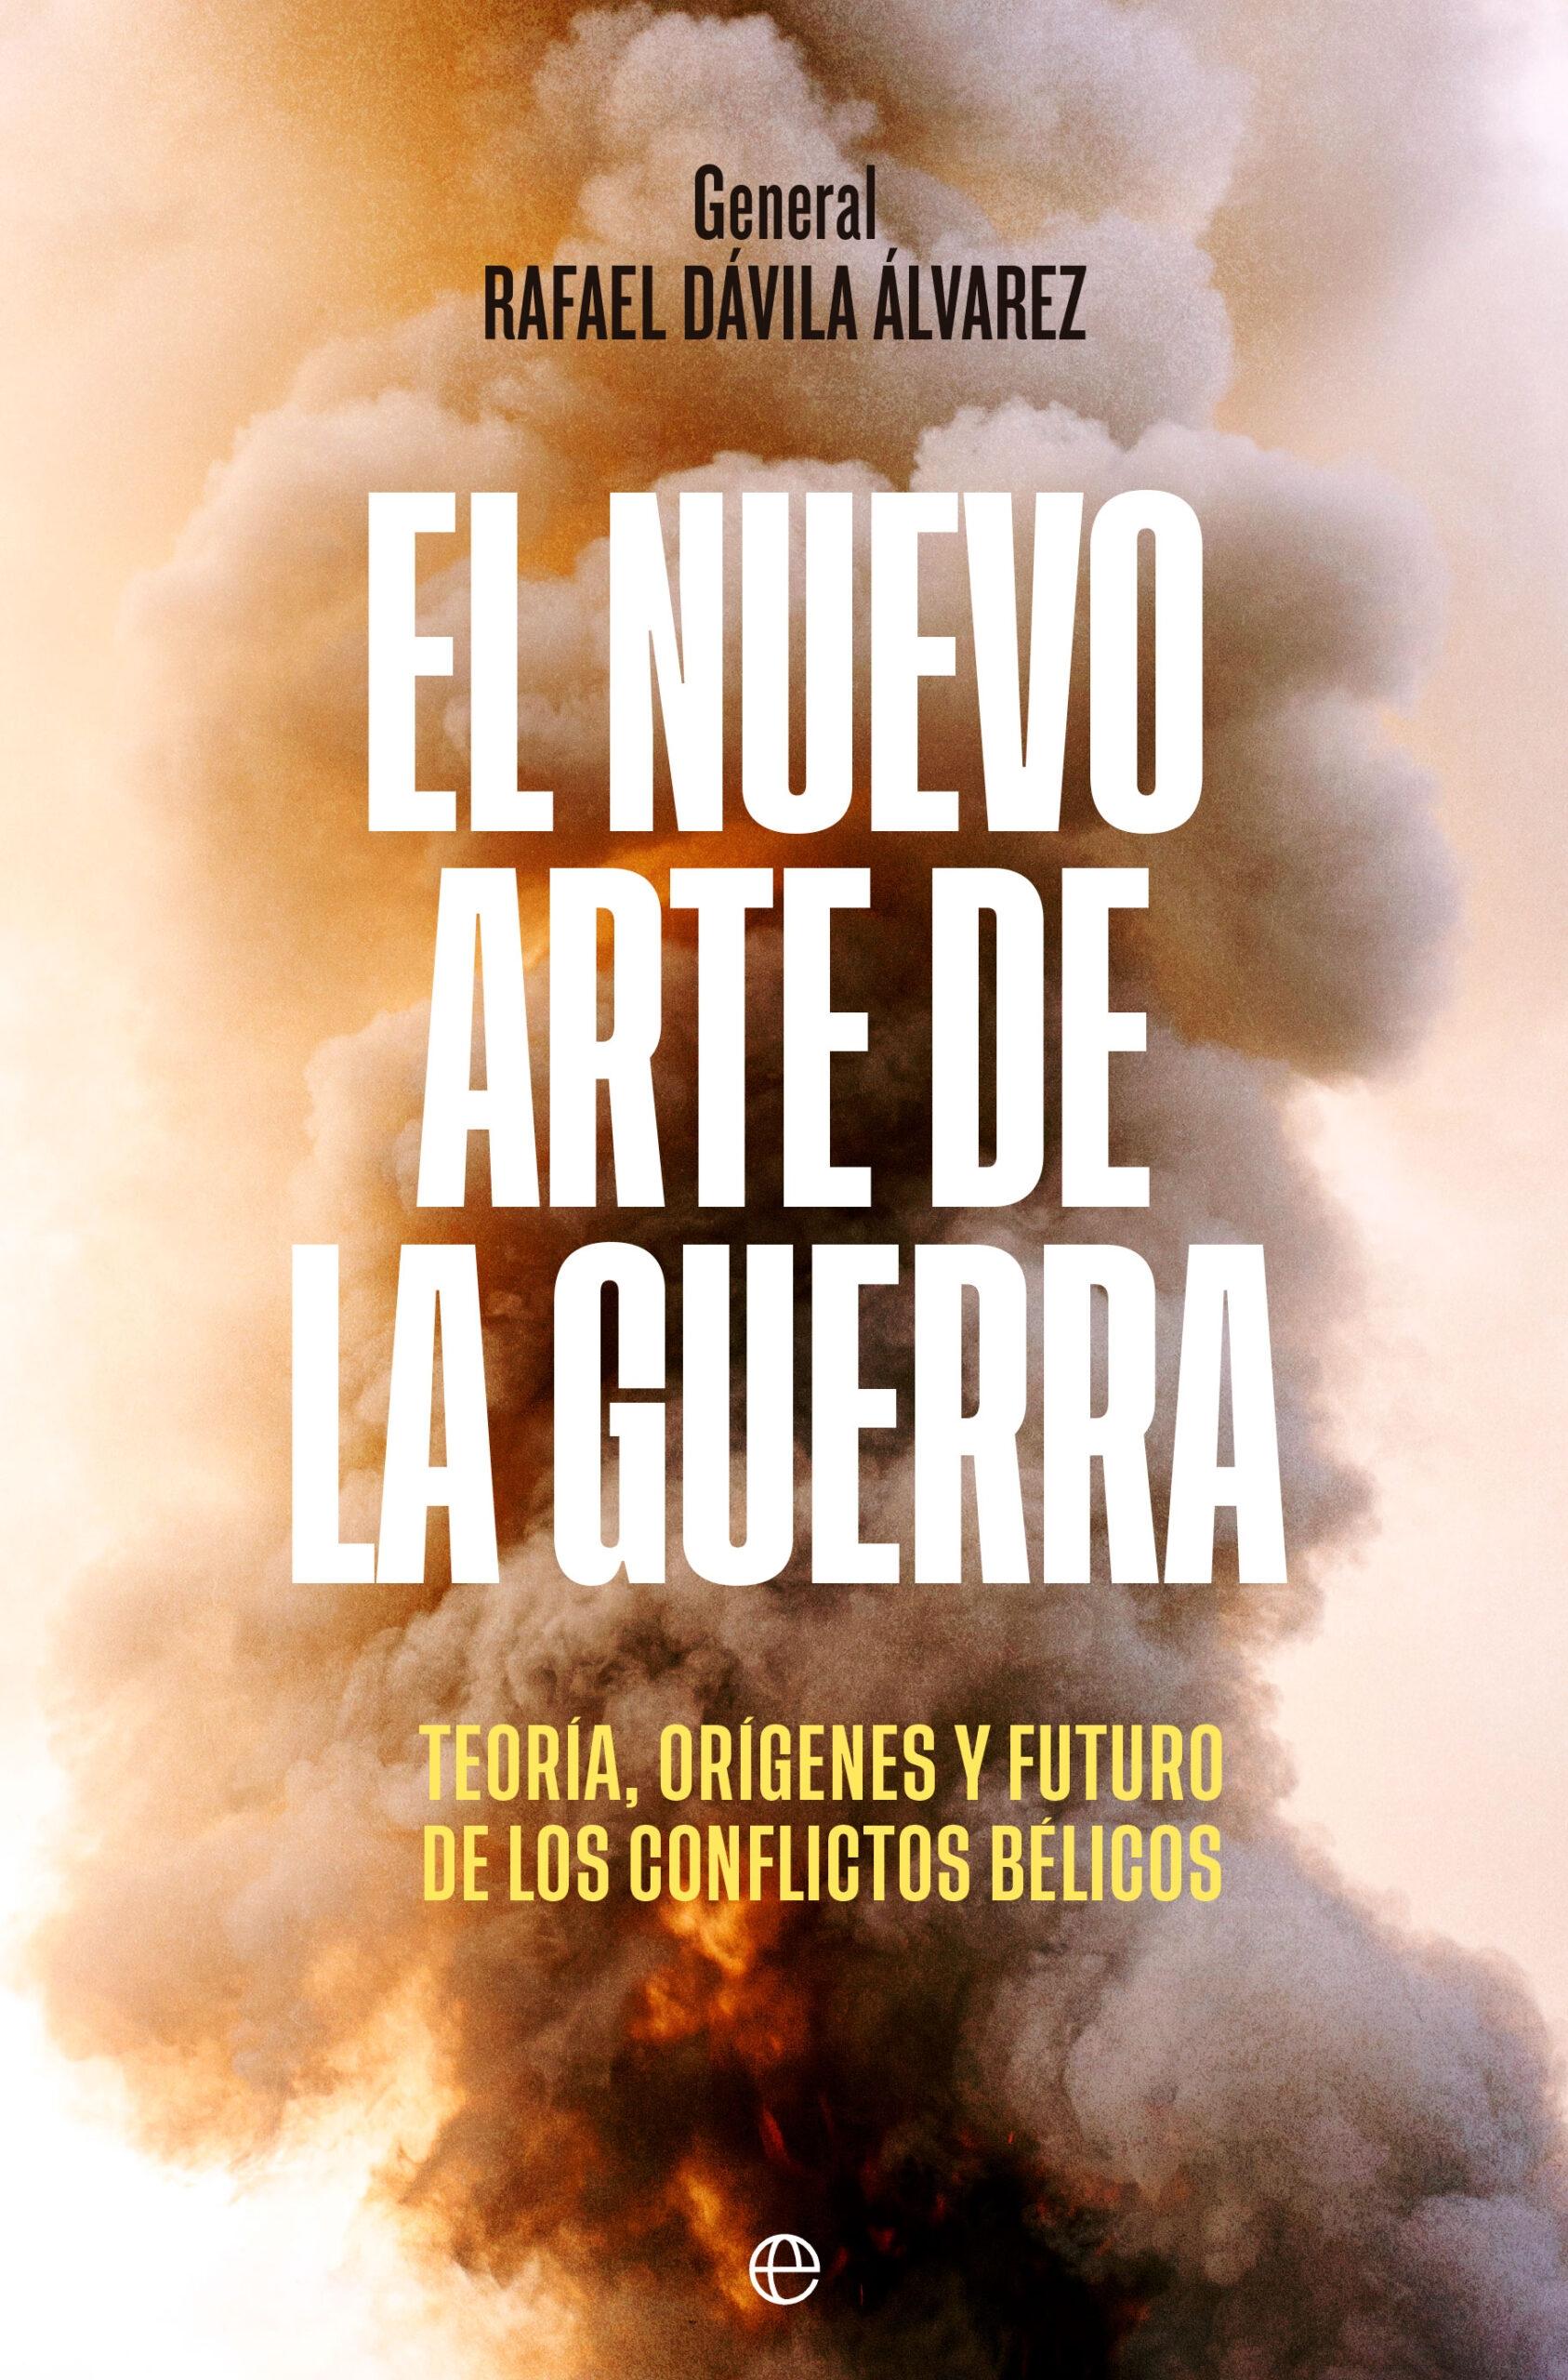 El nuevo arte de la guerra "Teoría, orígenes y futuro de los conflictos bélicos"